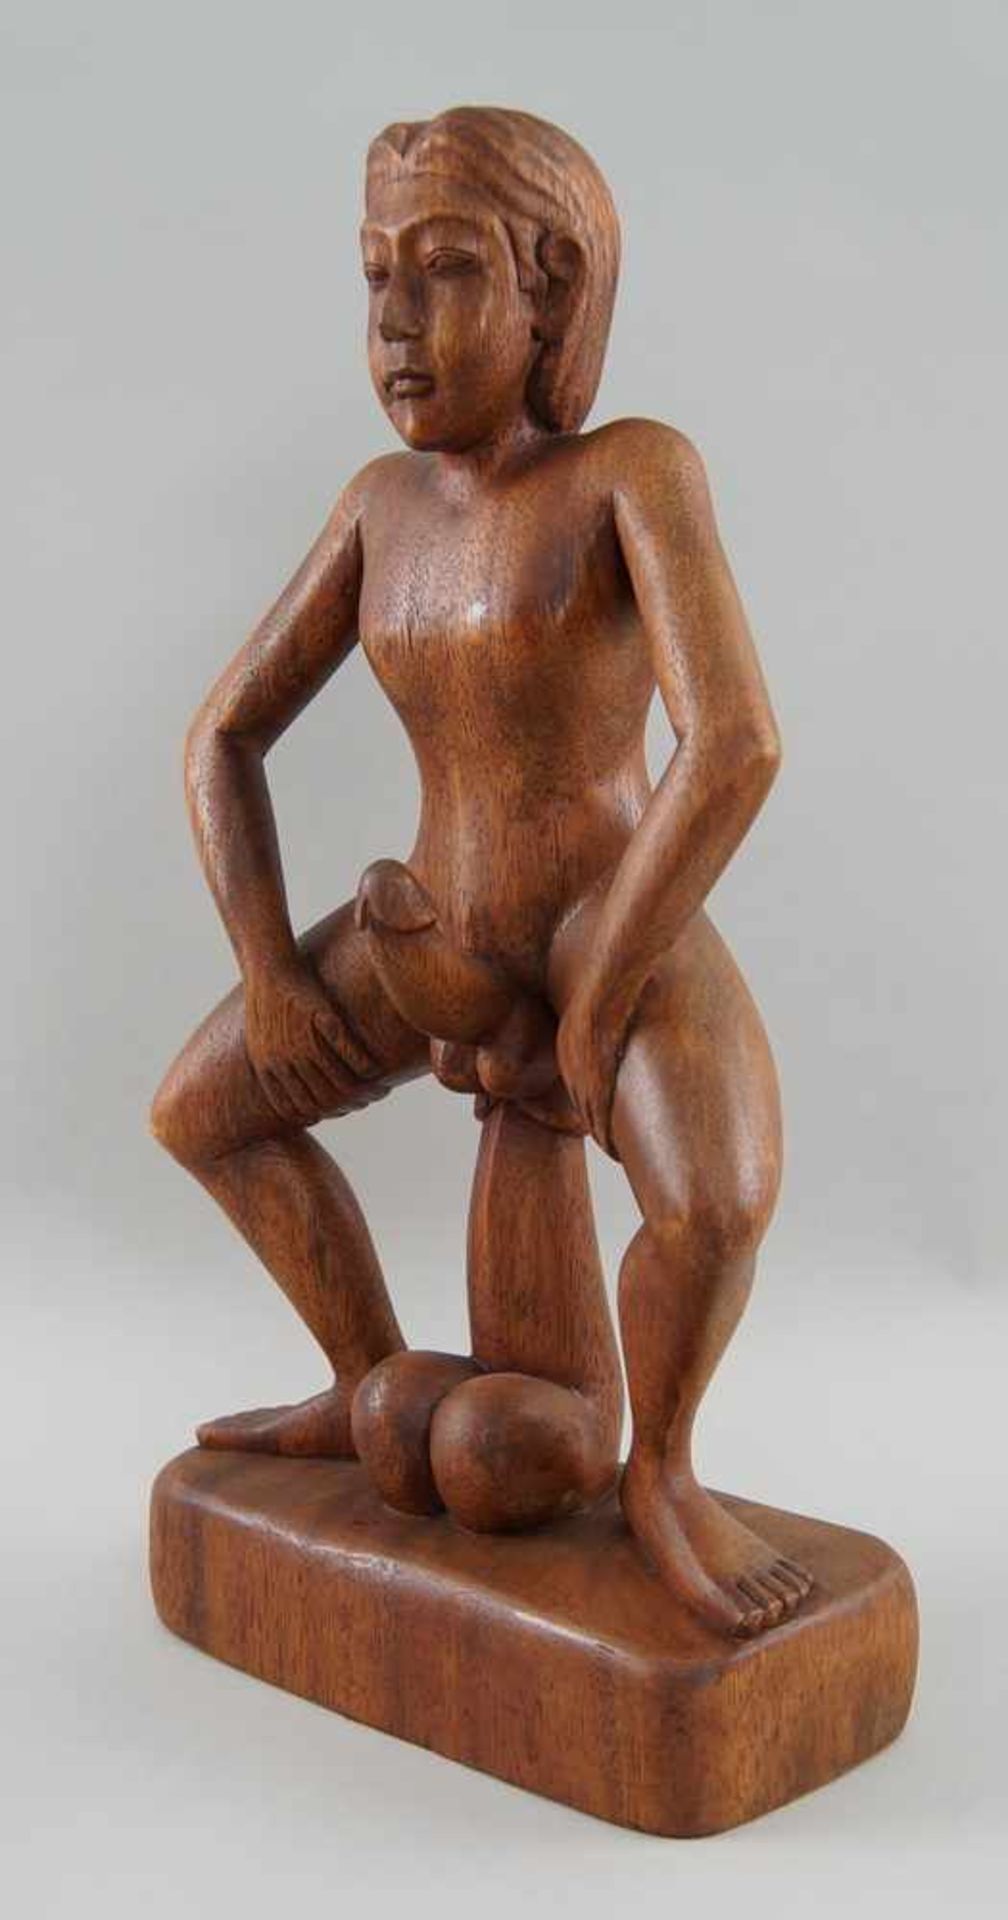 Fruchtbarkeitsskulptur / Ritualskulptur, Holz geschnitzt, H 41 cm - Bild 3 aus 4